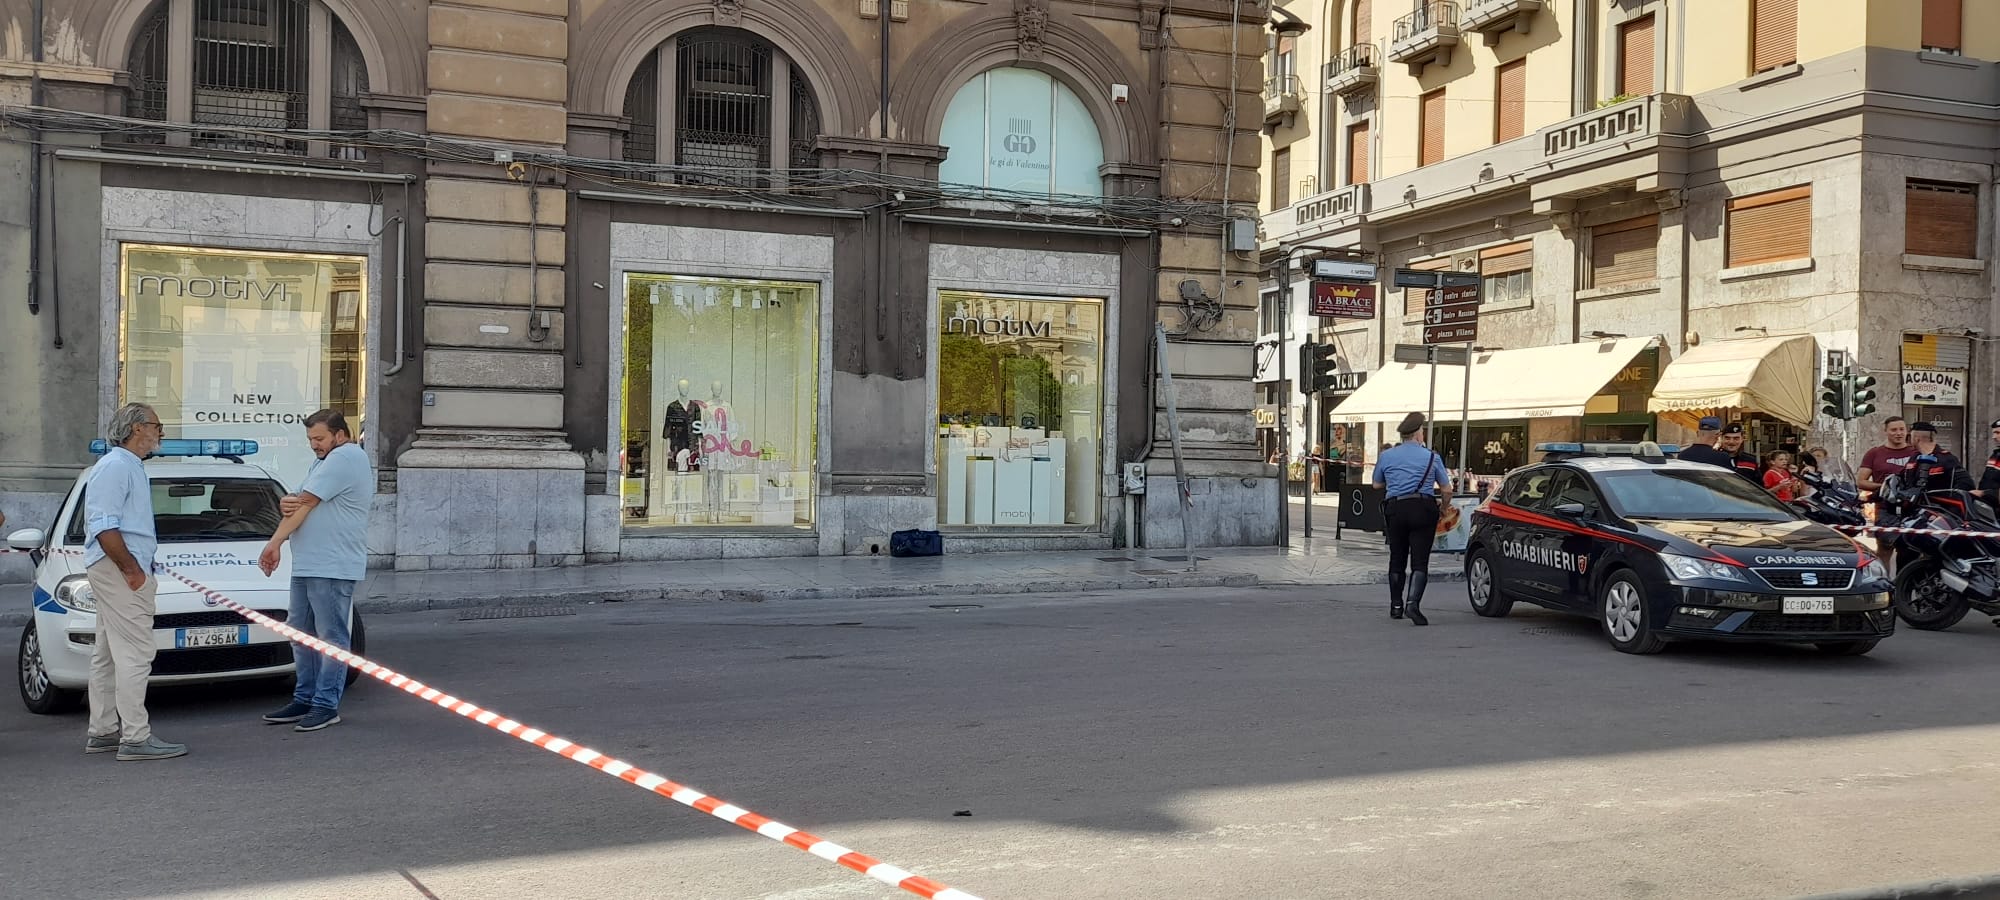 PALERMO: Borsa abbandonata davanti negozio a Palermo, scatta l’allarme anti bomba